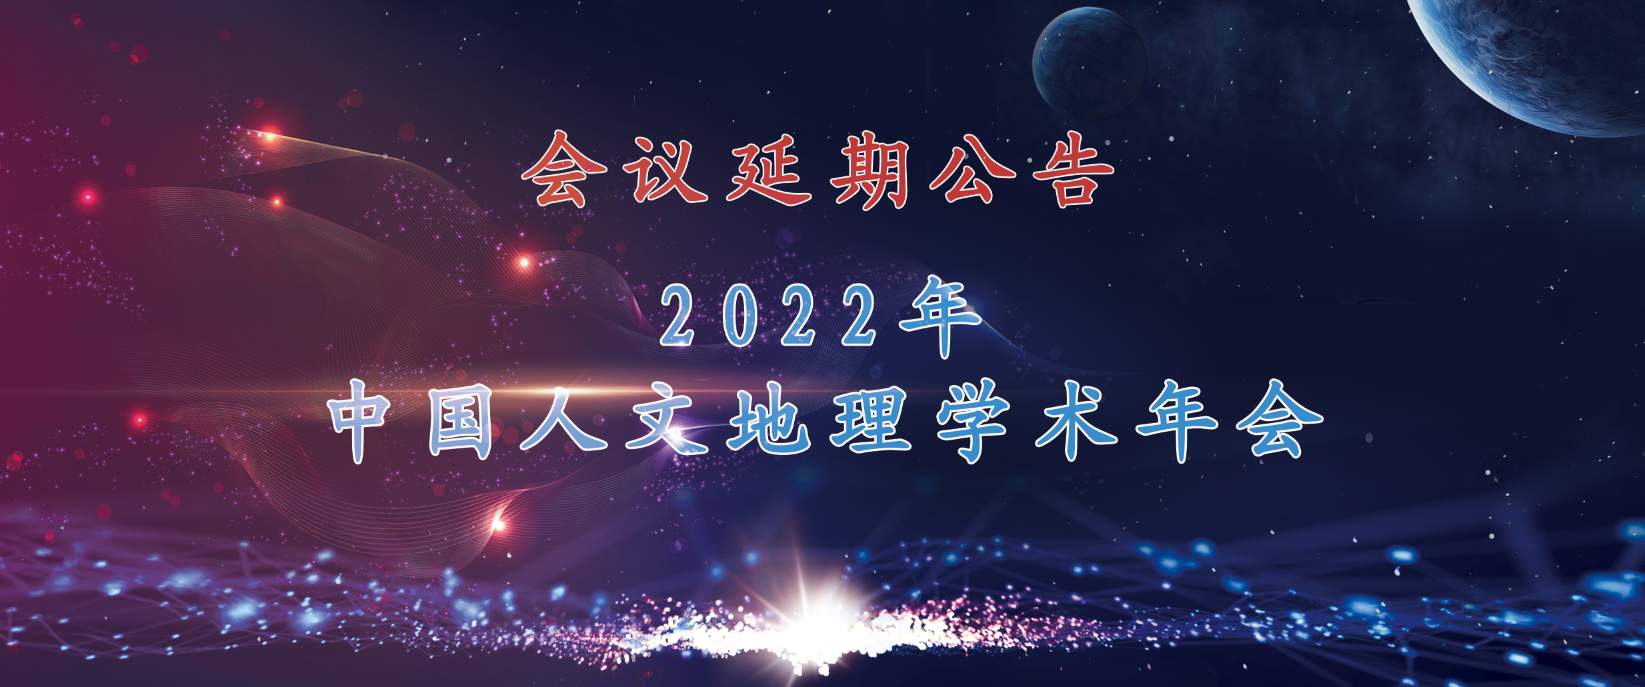 关于延期举办2022年中国人文地理学术年会的通知